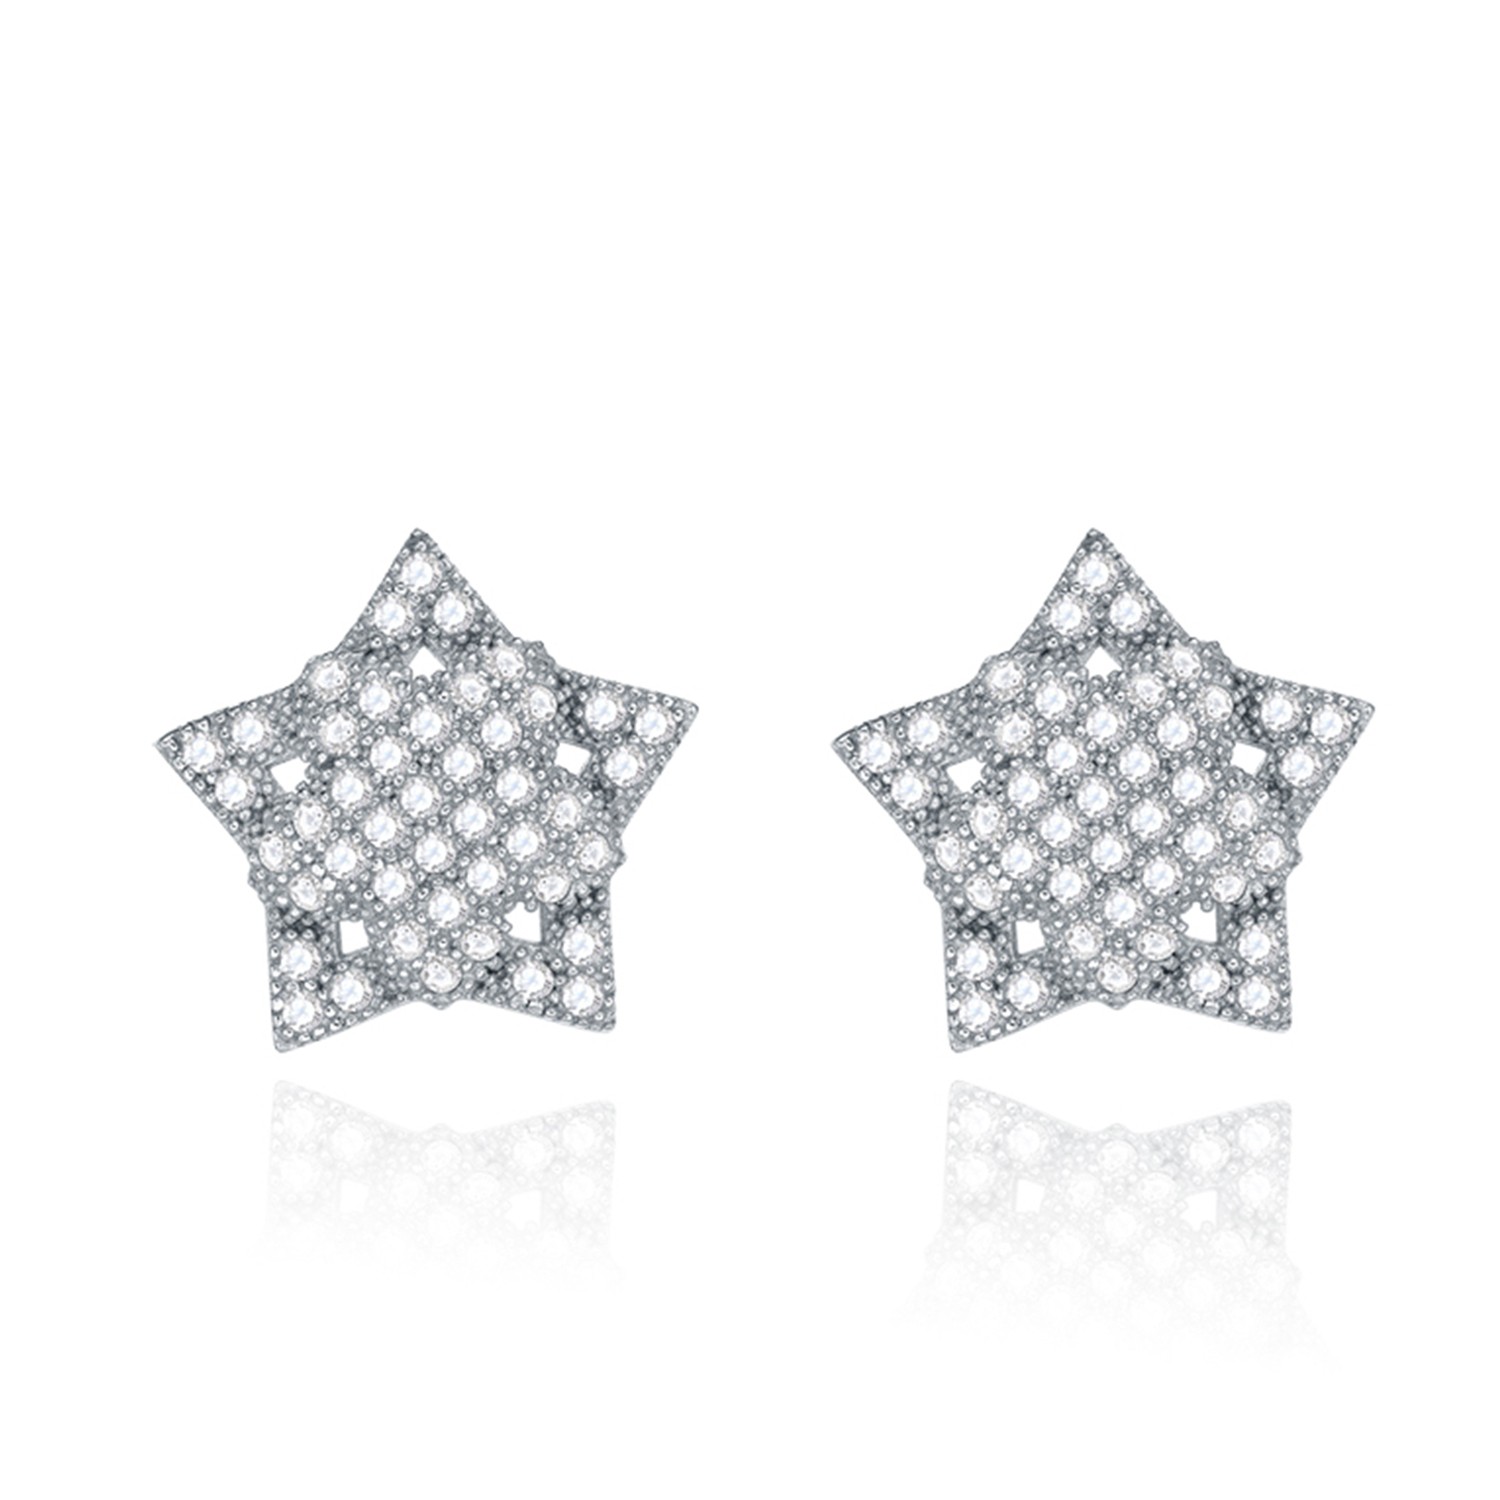 Fashion Earring Jewelry CZ 925 Sterling Silver Filled Star Stud Earrings for Women